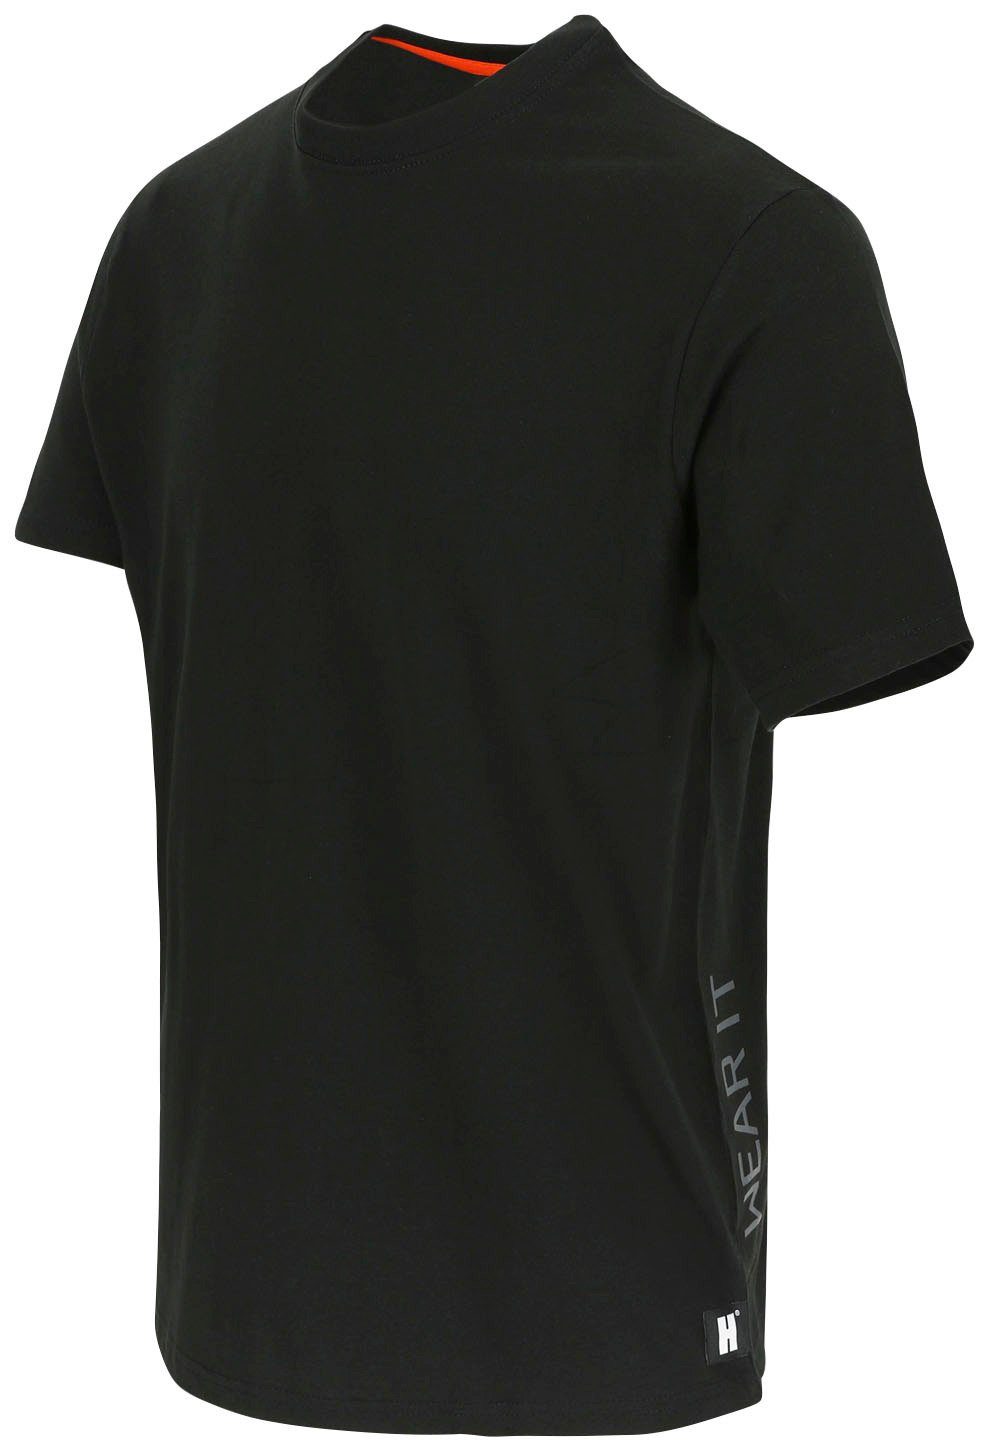 Herock T-Shirt Callius T-Shirt kurze Rippstrickkragen Ärmel, kurze Herock®-Aufdruck, Ärmel Rundhalsausschnitt, schwarz